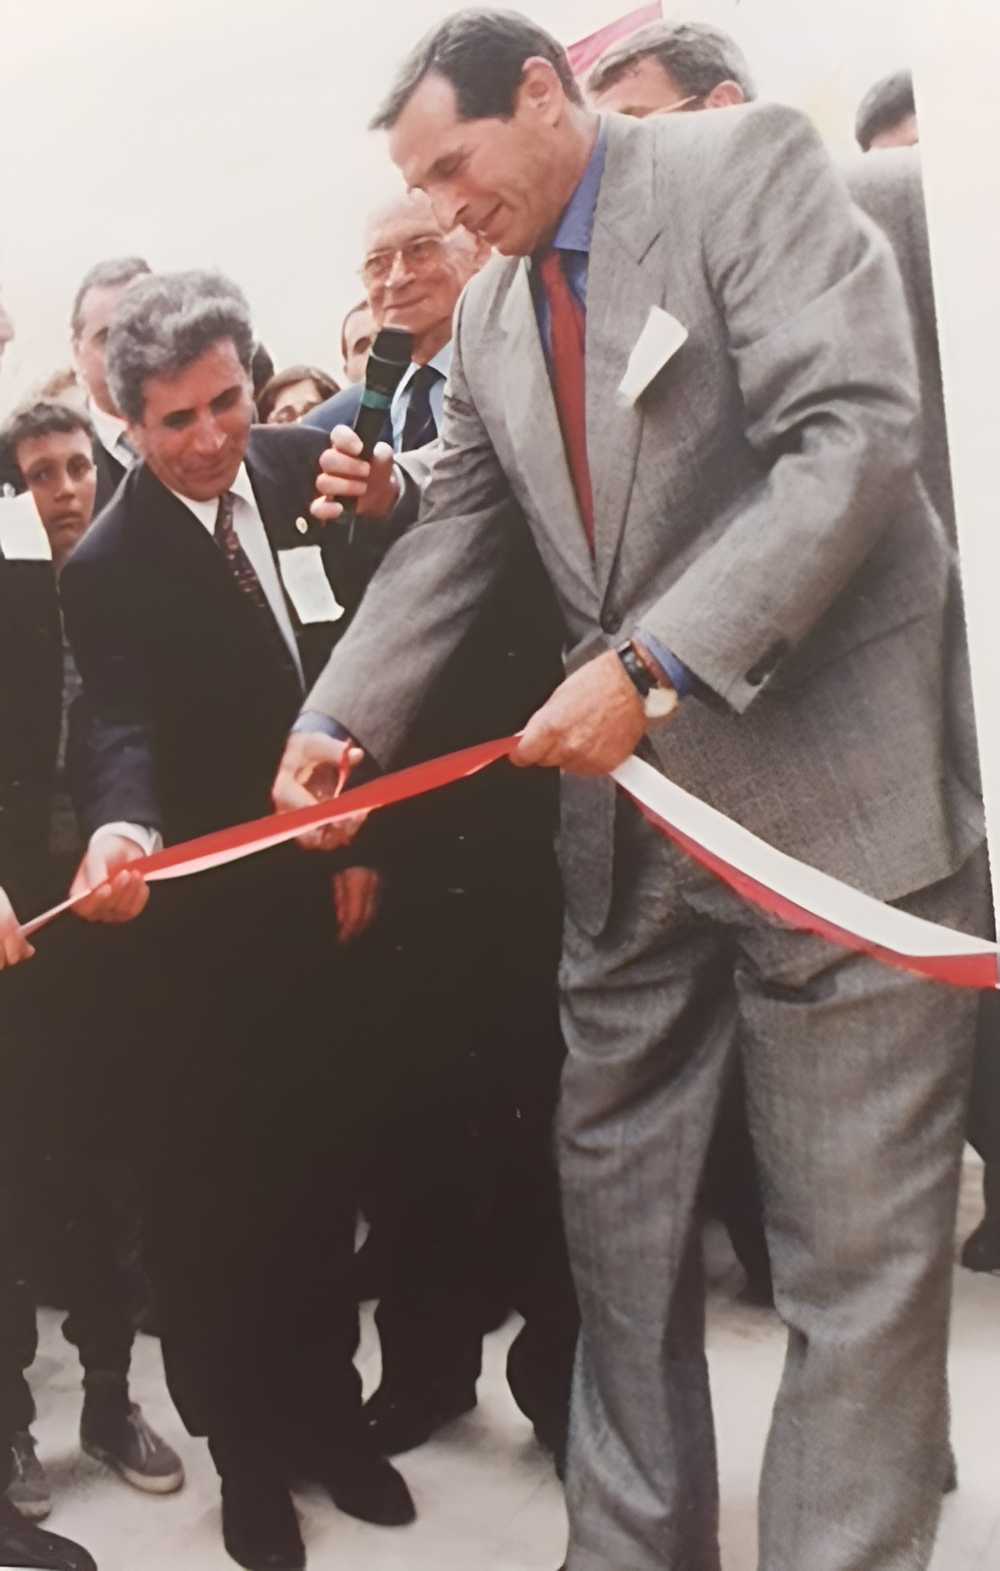 Resim 7 : 23 Nisan 1997 Sağlık Müzesi'nin açılışı: sağdan sola Trakya Üniversitesi kurucu rektörü Prof. Dr. Ahmet Karadeniz, üçüncü dönem Rektörü Prof. Dr. Osman İnci ve arkada Dr. Ratip Kazancıgil